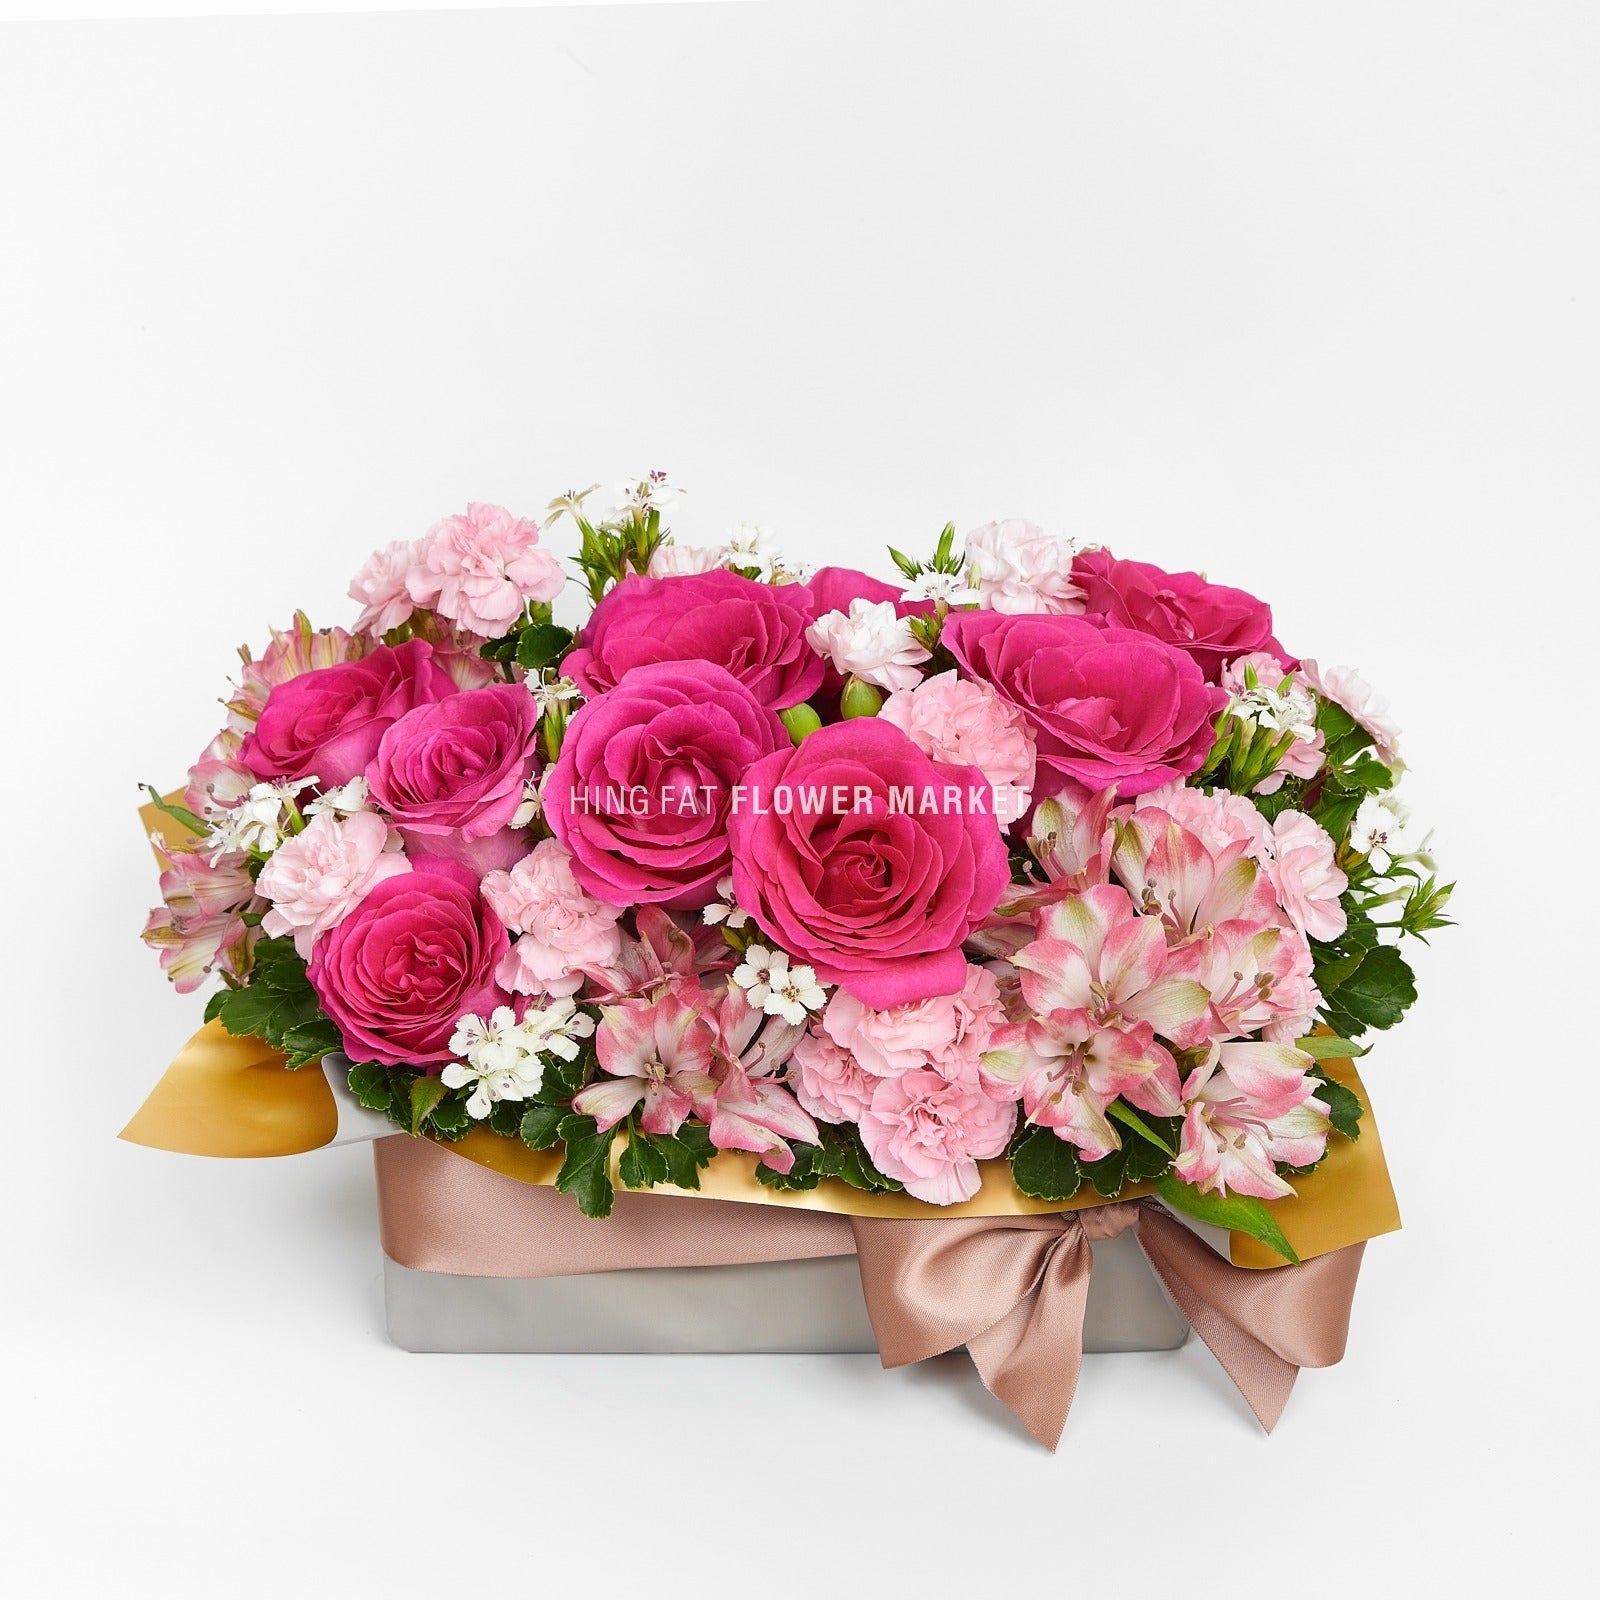 桃紅玫瑰小康乃馨花禮 Magenta rose and carnation flower arrangement flower basket